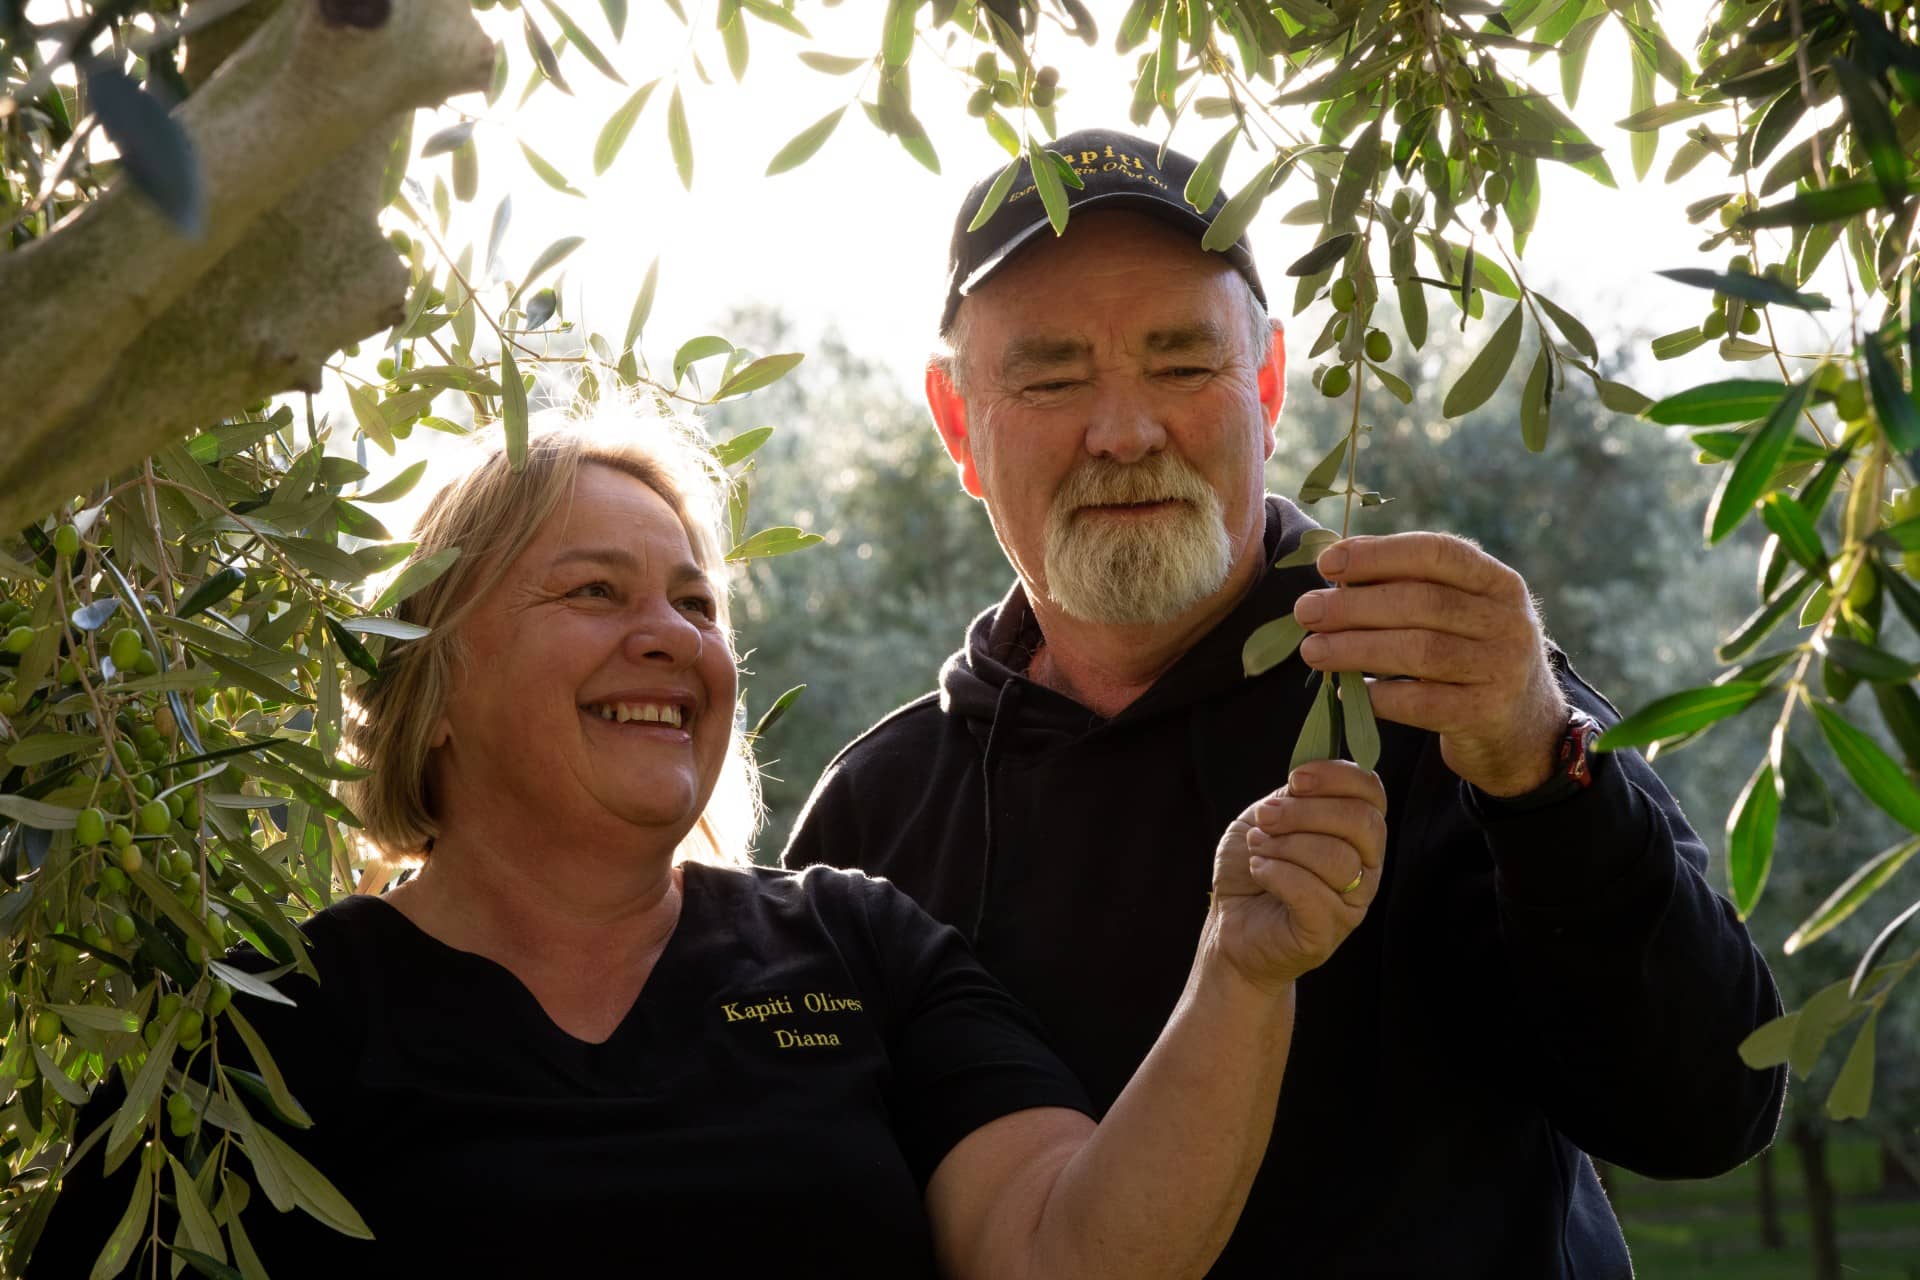 Австралия-и-Новая-Зеландия-лучшие-конкурсы-оливкового масла-производство-новой-зеландии-производители-наслаждайтесь-сильным-показом-на-мировой-конкуренции-времени-оливкового-масла